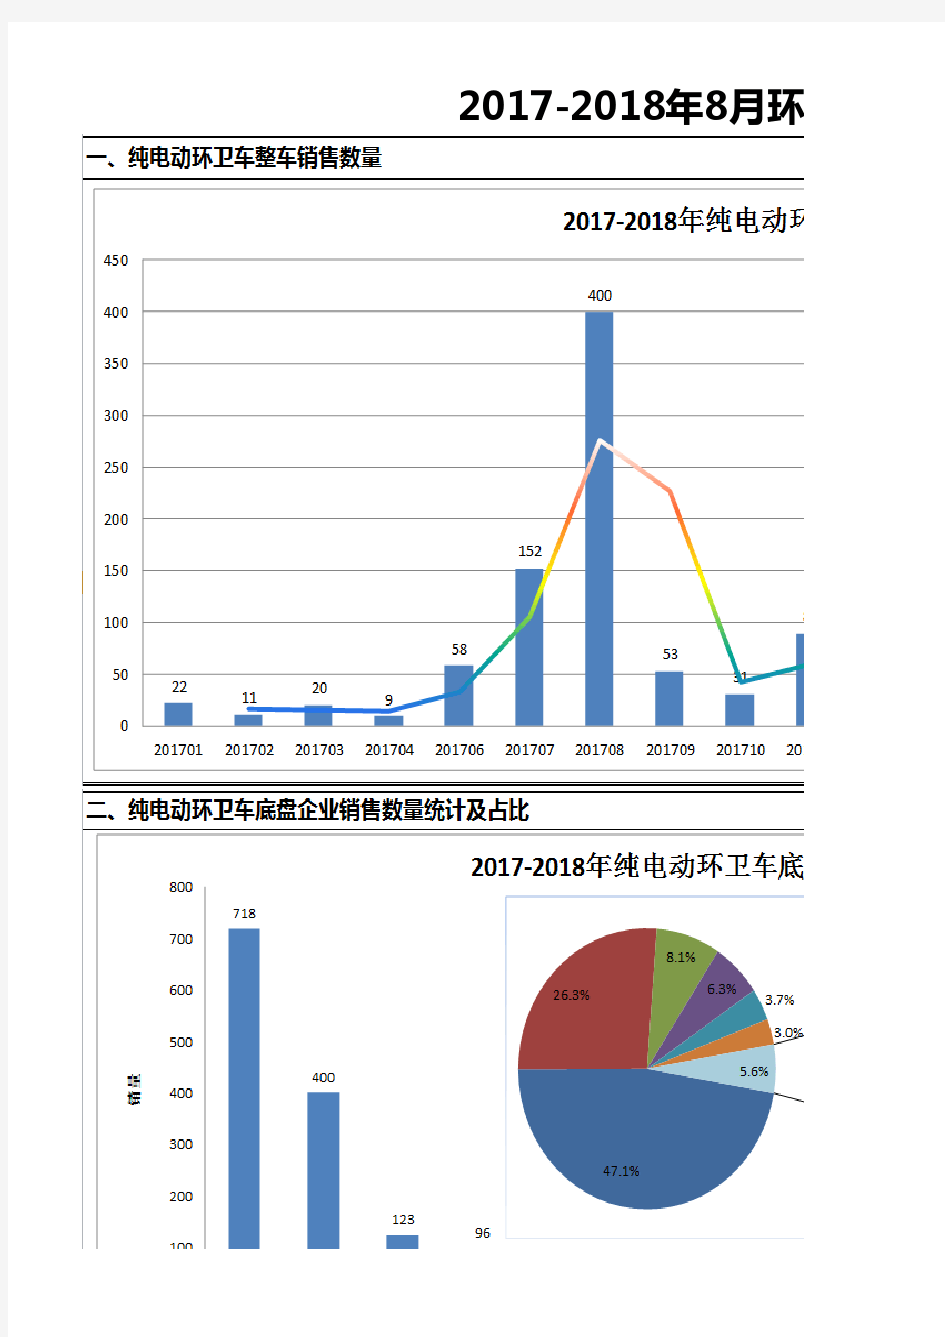 2017-2018年环卫车保险数据统计——分析报告